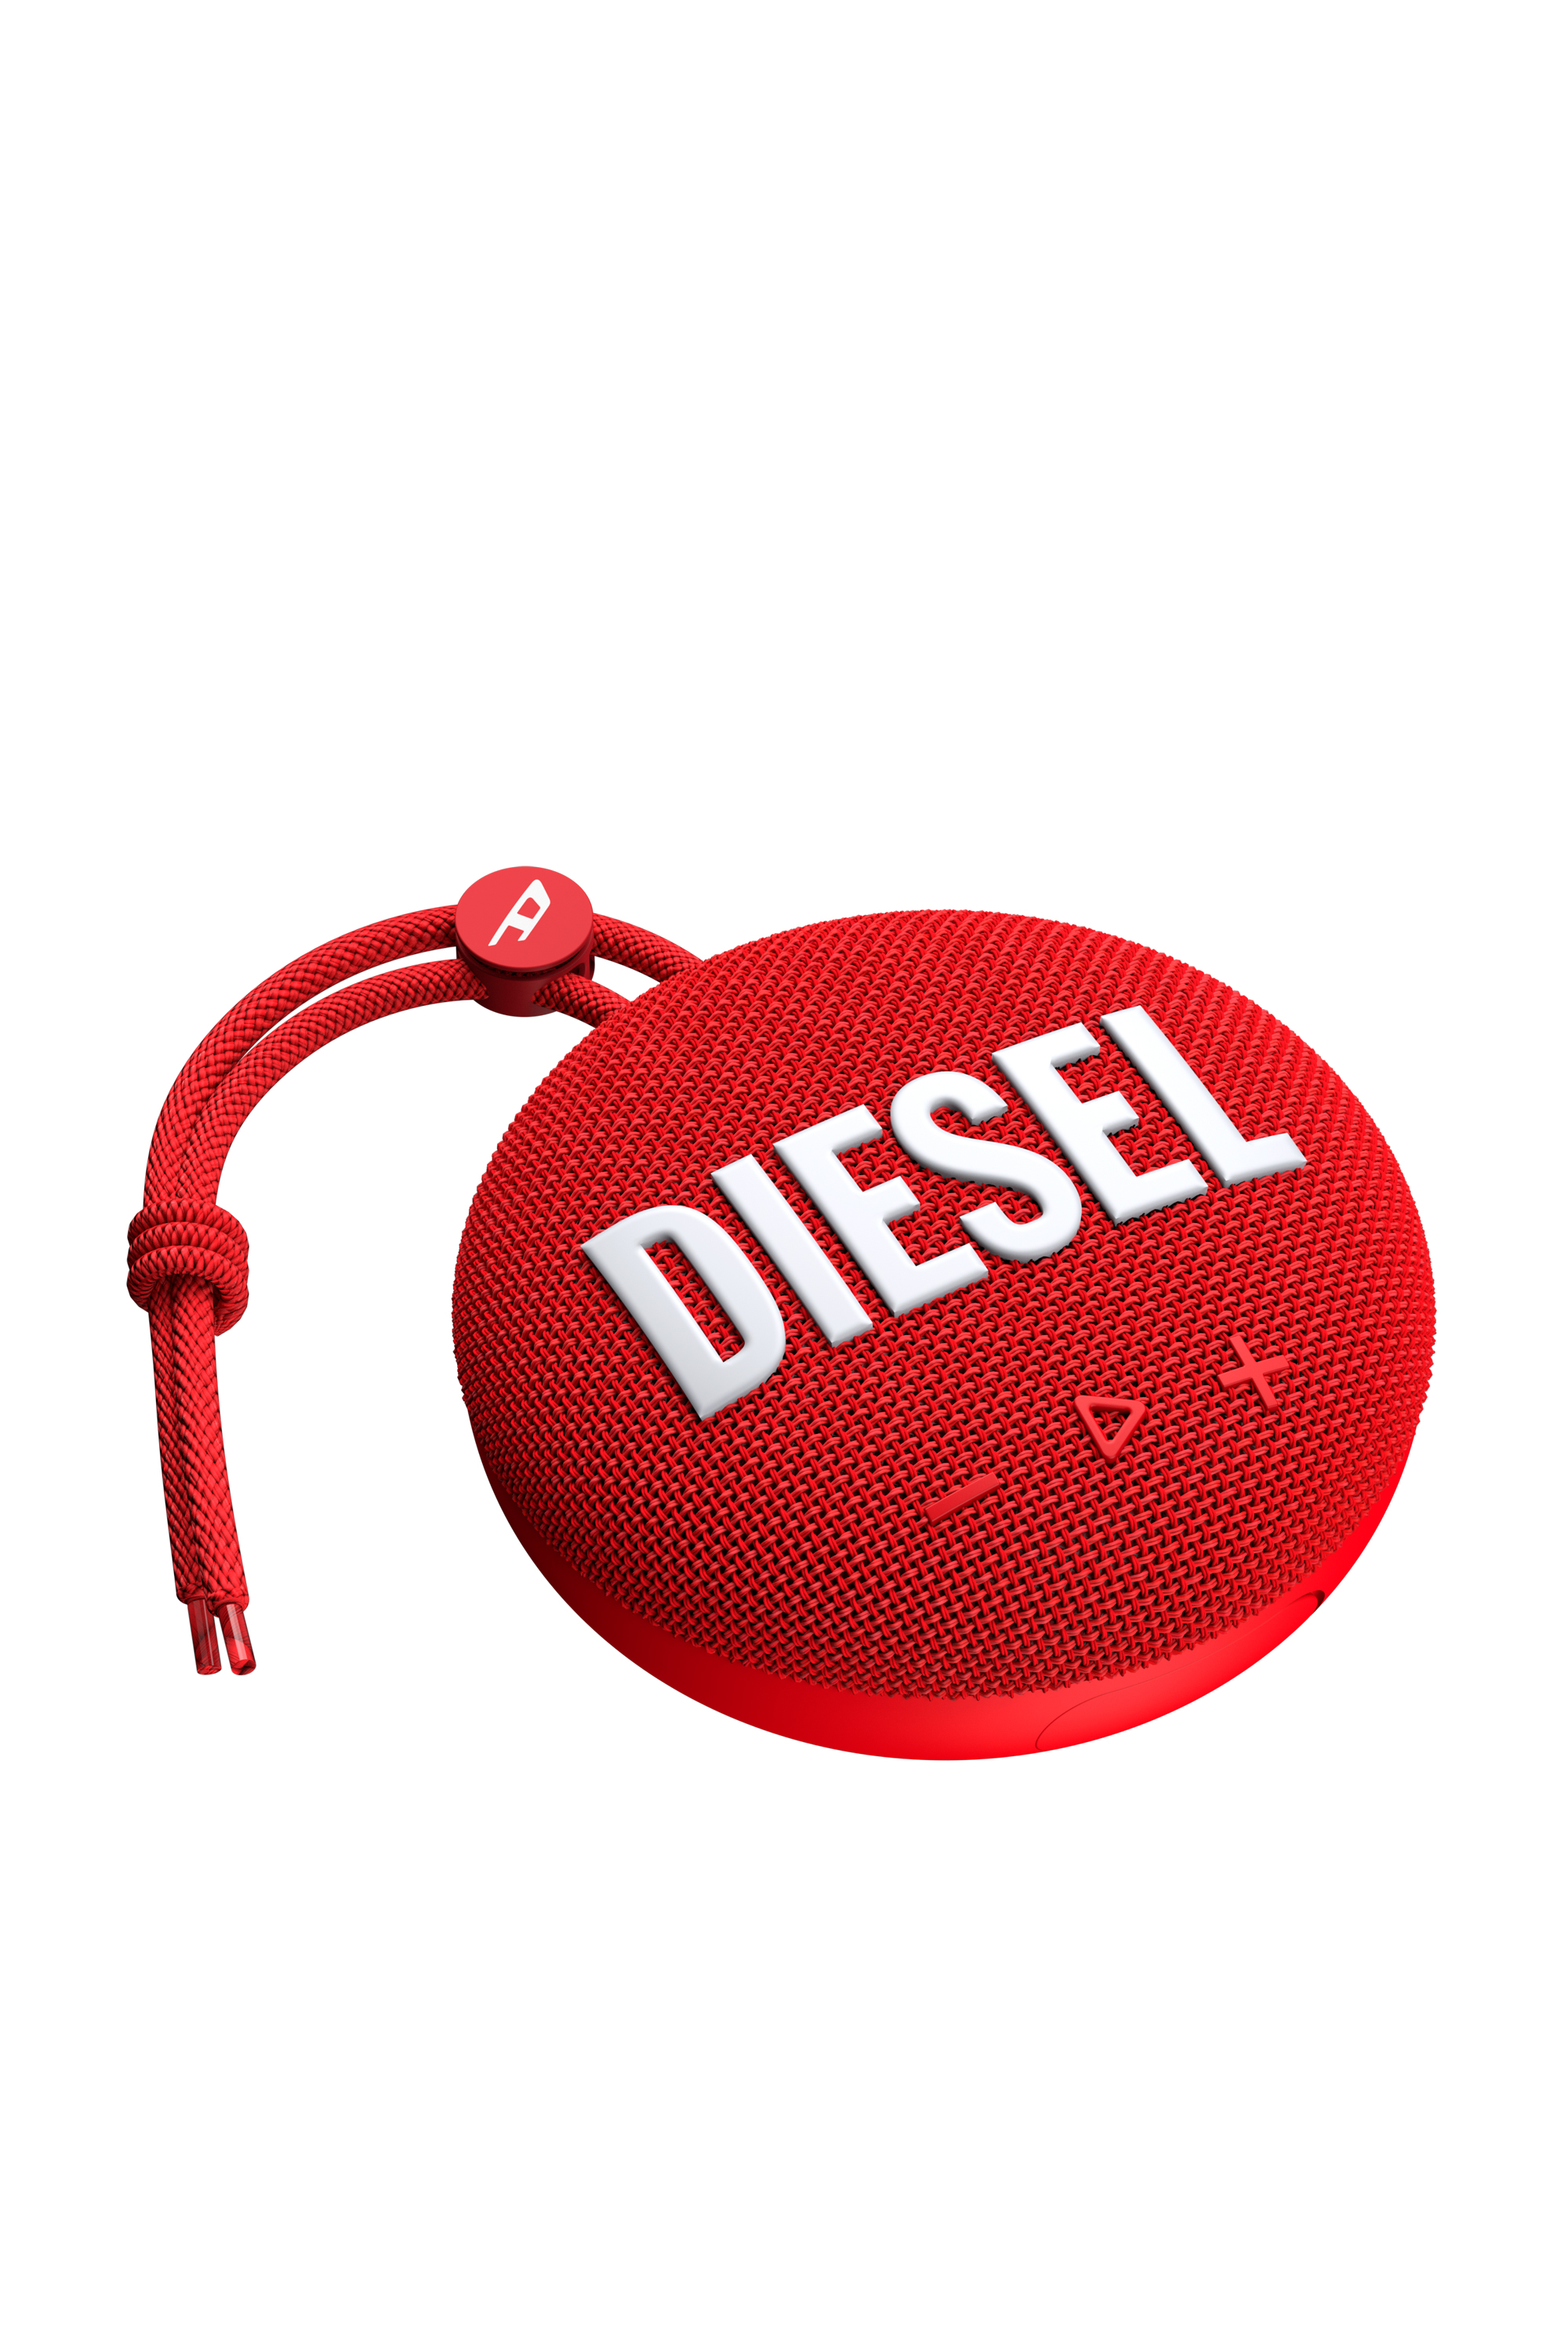 Diesel - 52954 BLUETOOTH SPEAKER, Rojo - Image 2